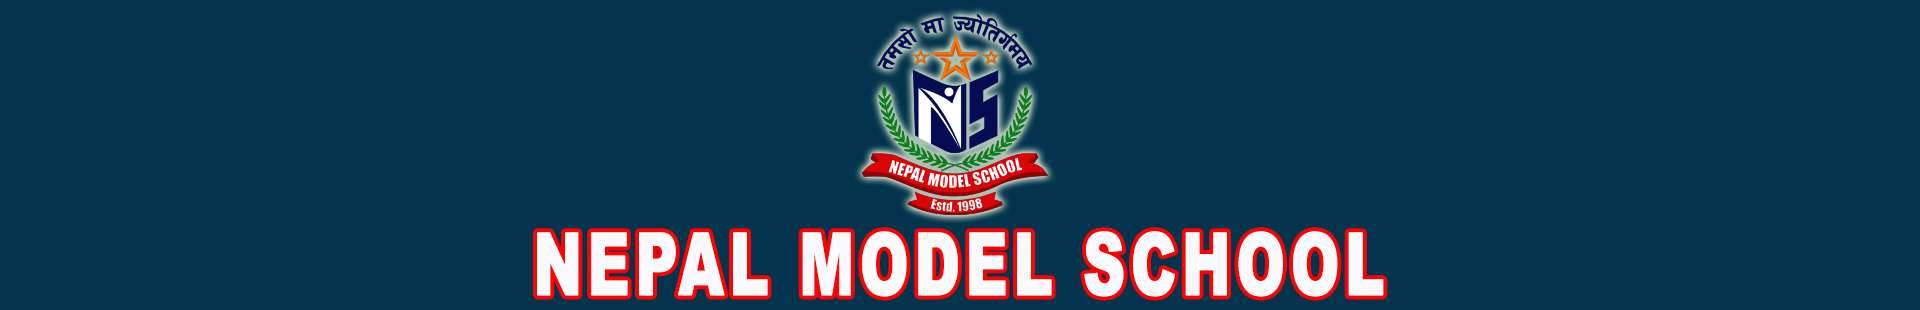 Nepal Model School